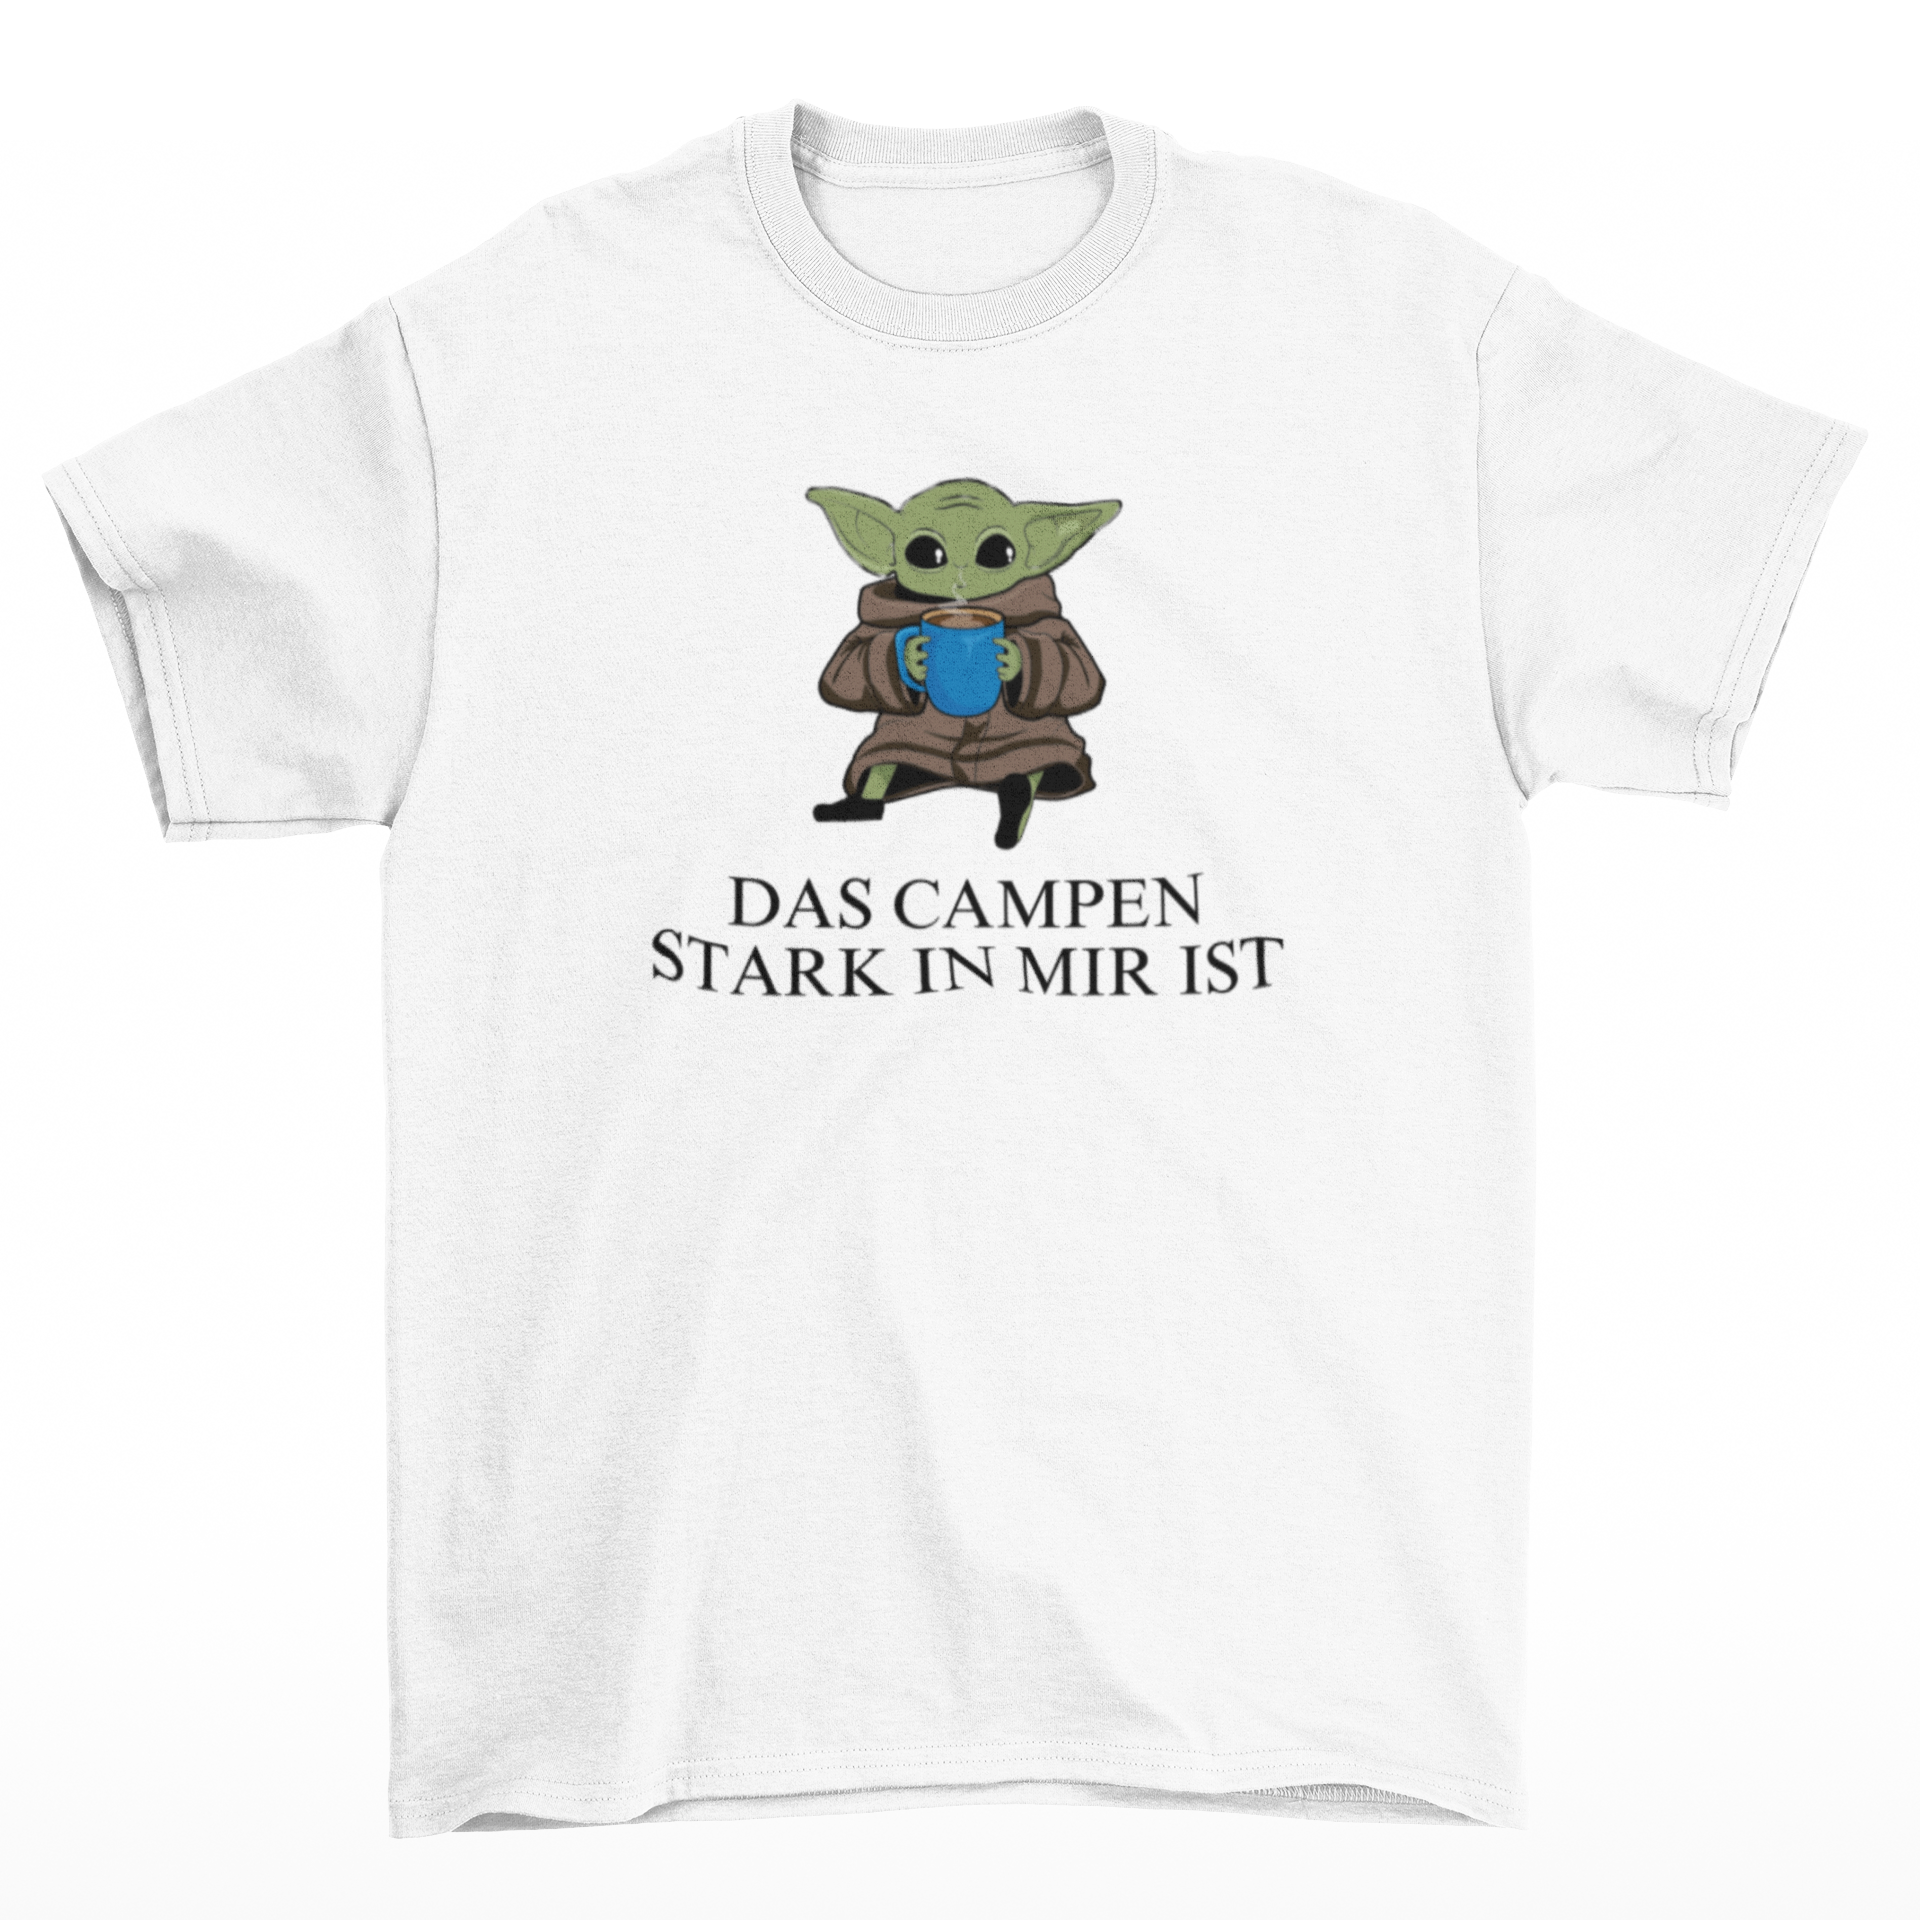 Das Campen stark in mir ist  - T-Shirt